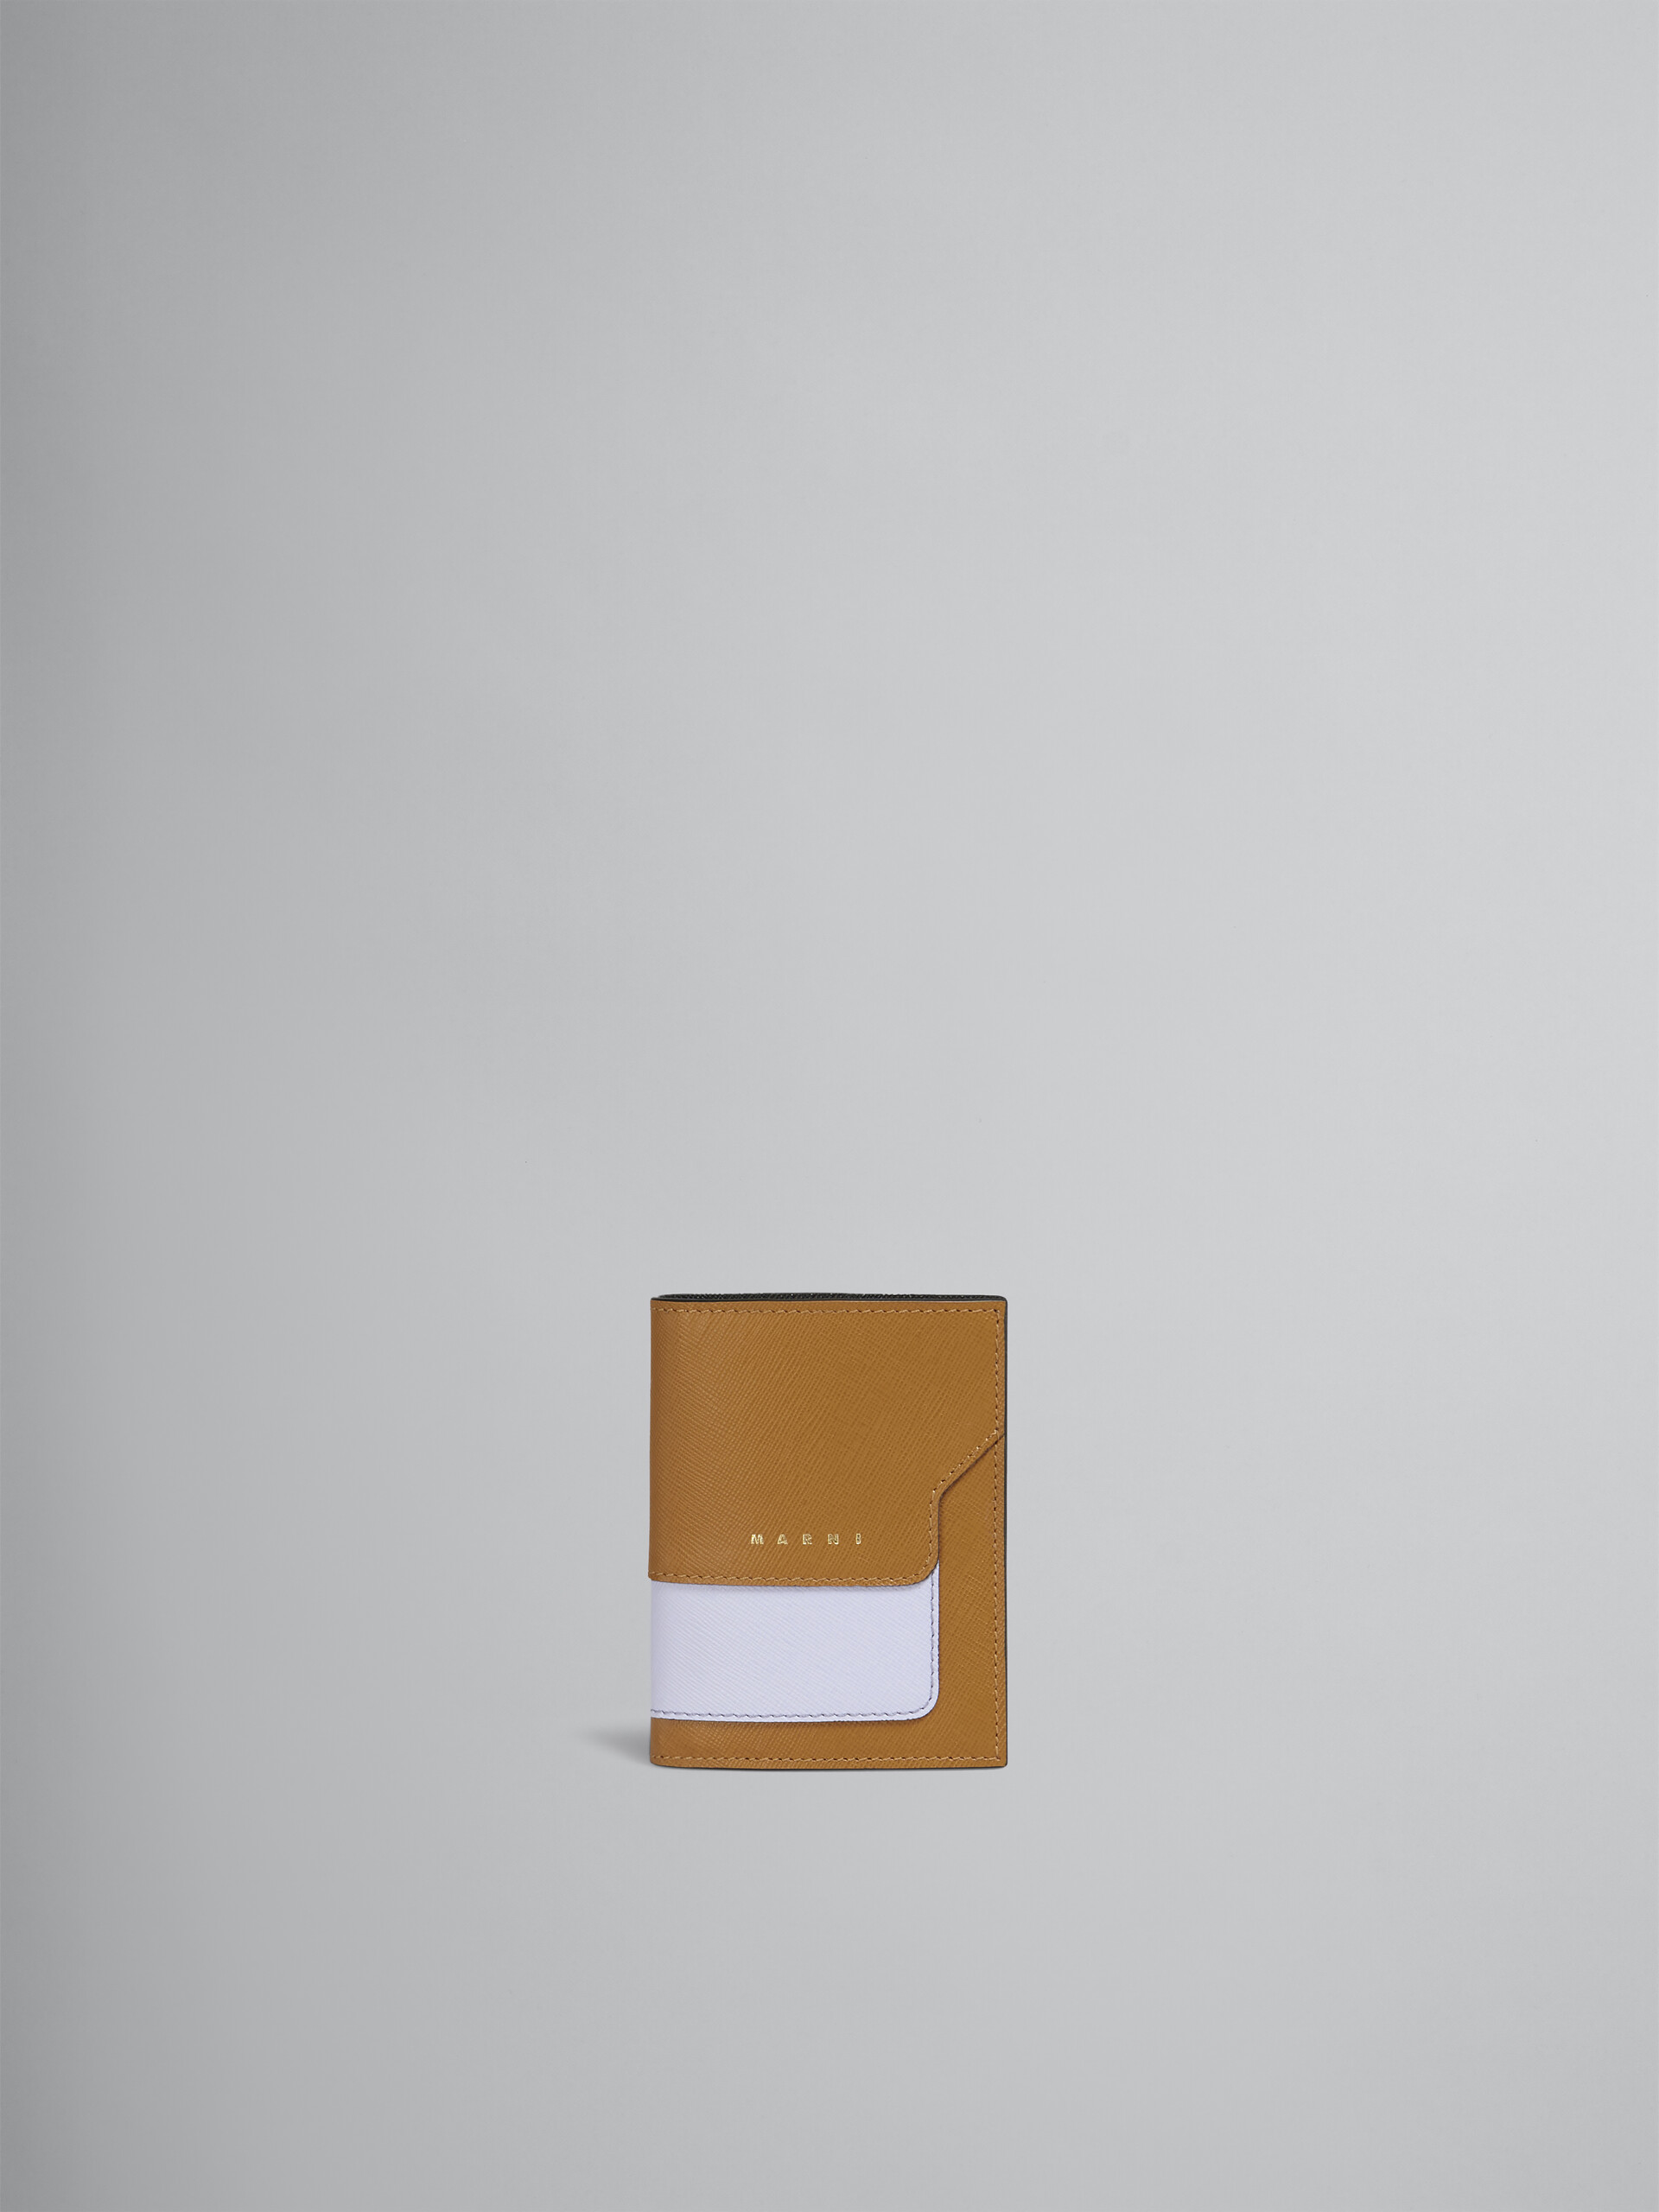 ブラウン ライラック ブラック サフィアーノレザー製 二つ折りウォレット - 財布 - Image 1